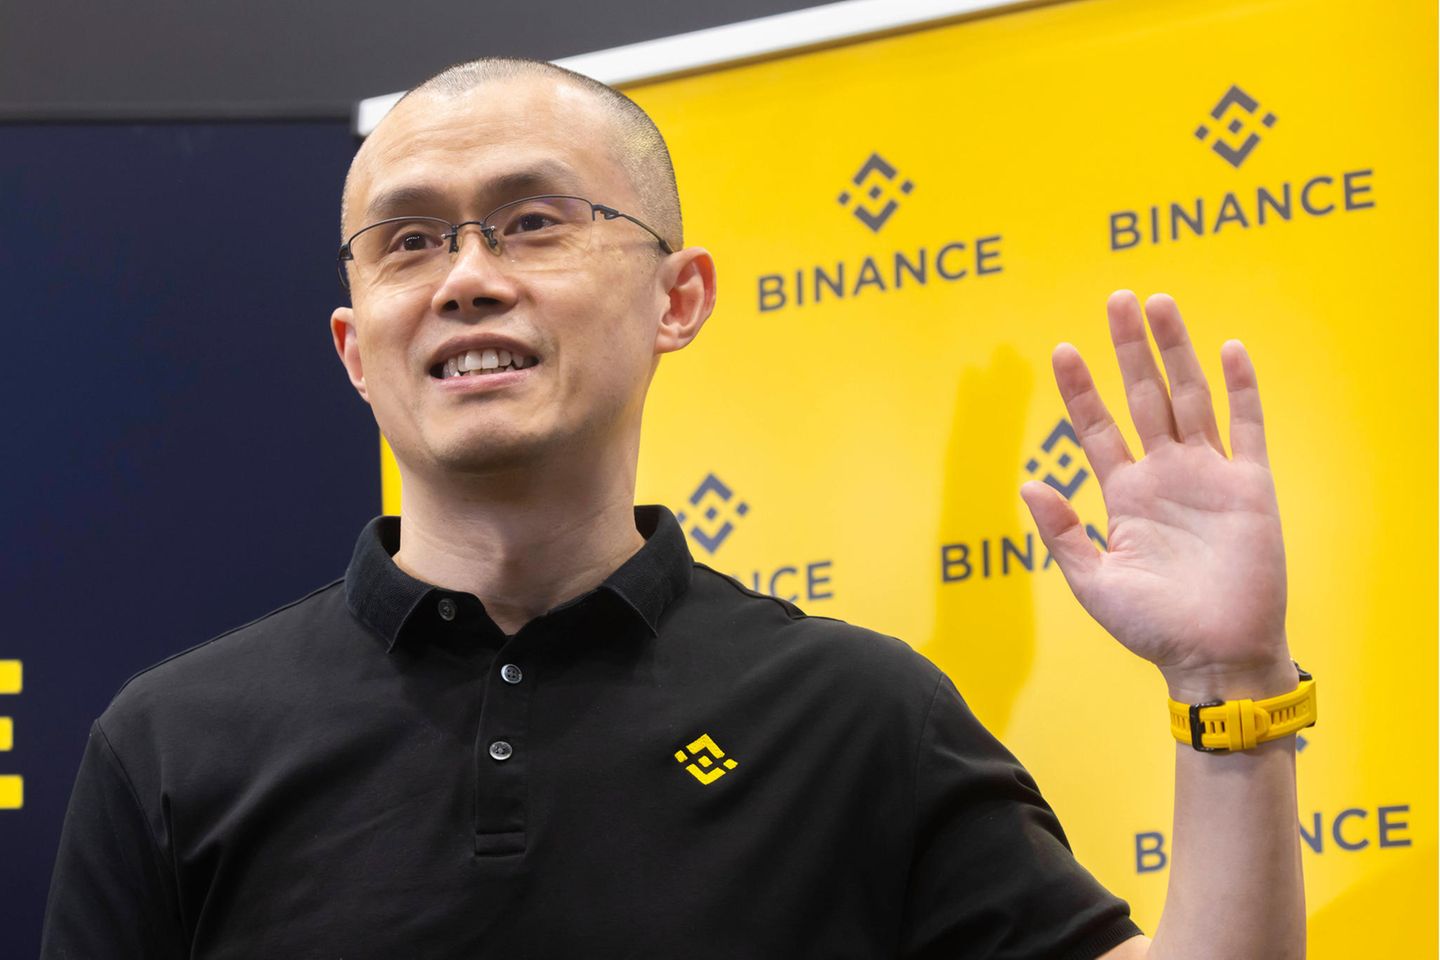 Binance-Gründer Zhao Changpeng